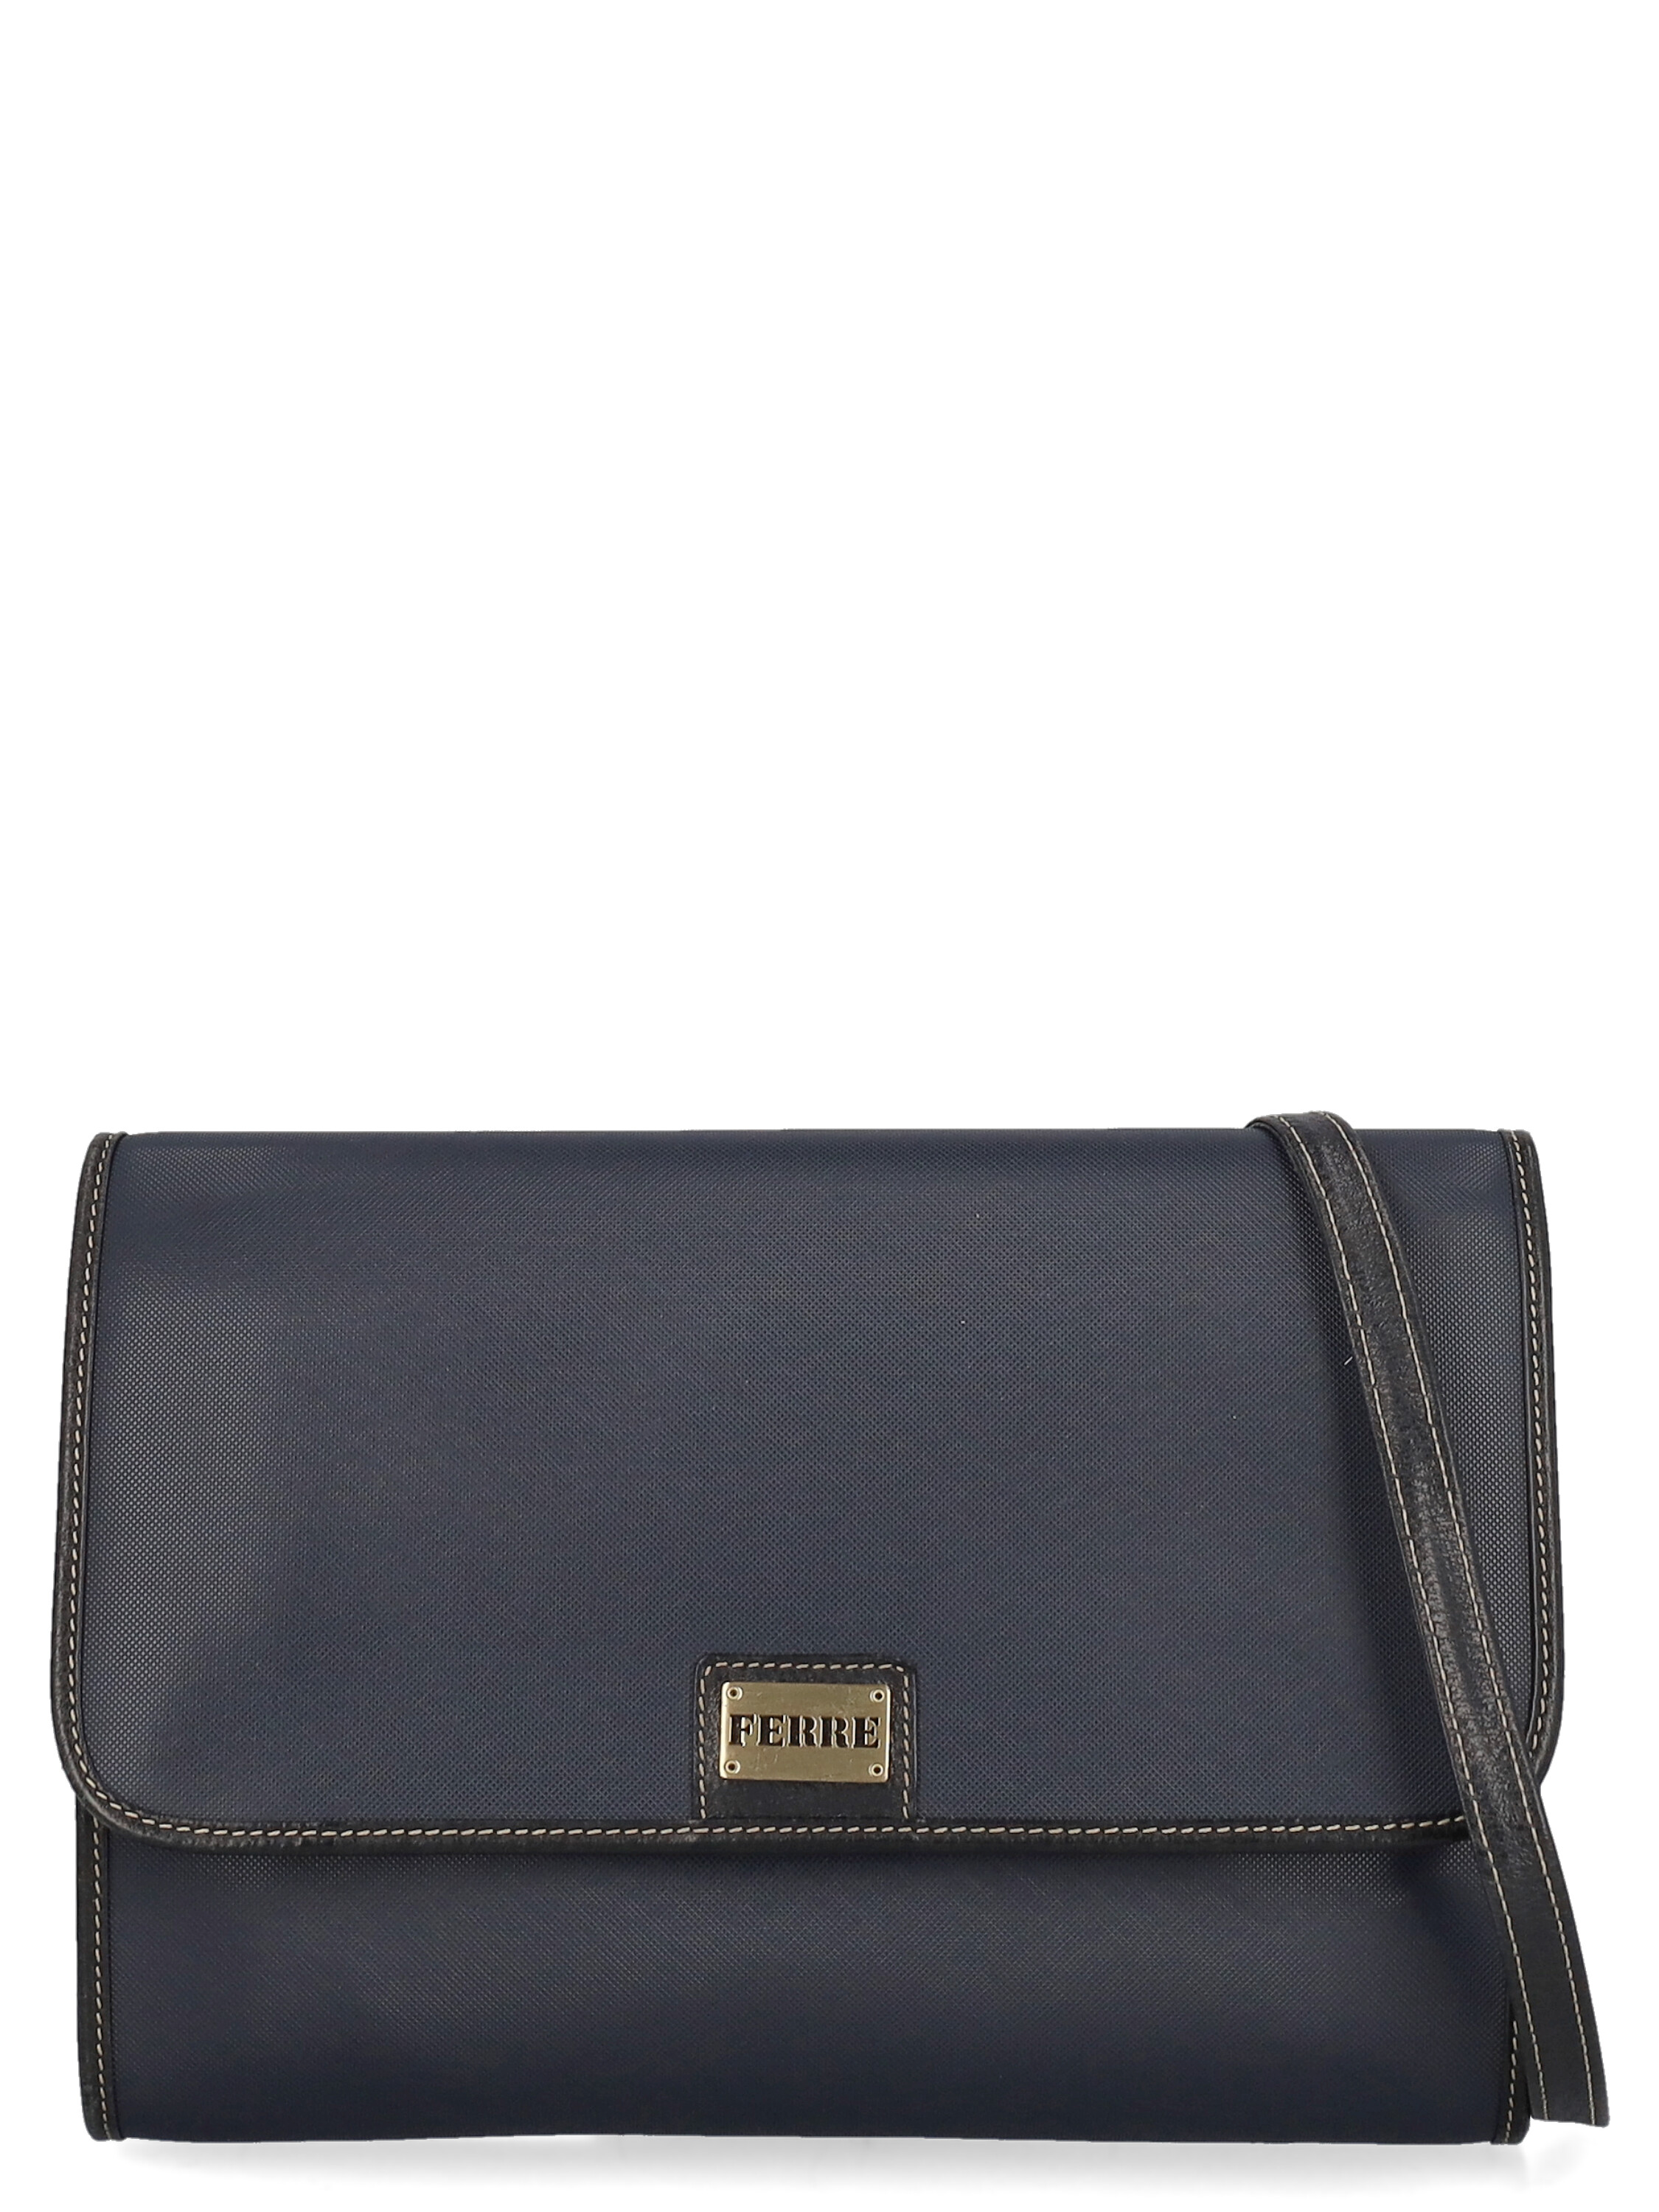 Pre-Owned & Vintage GIANFRANCO FERRE Handbags for Women | ModeSens